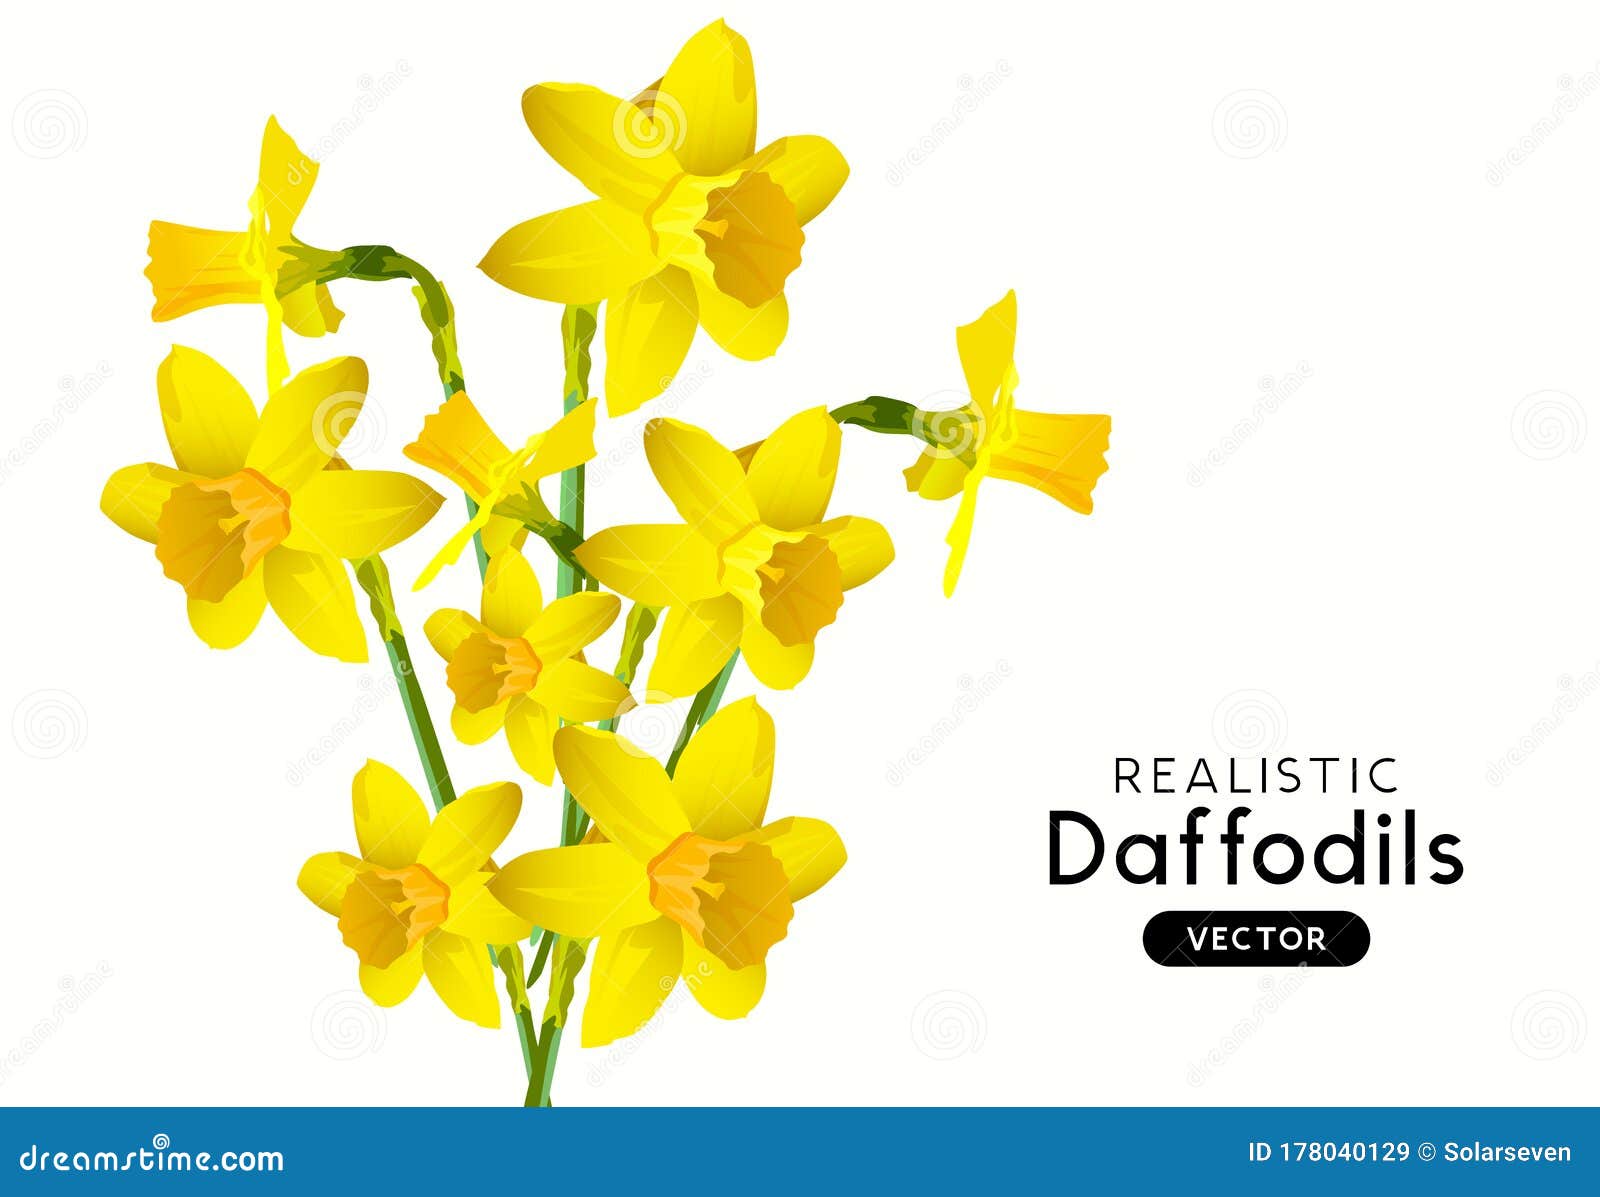 Realistic Daffodil Tattoo Black and White - wide 6